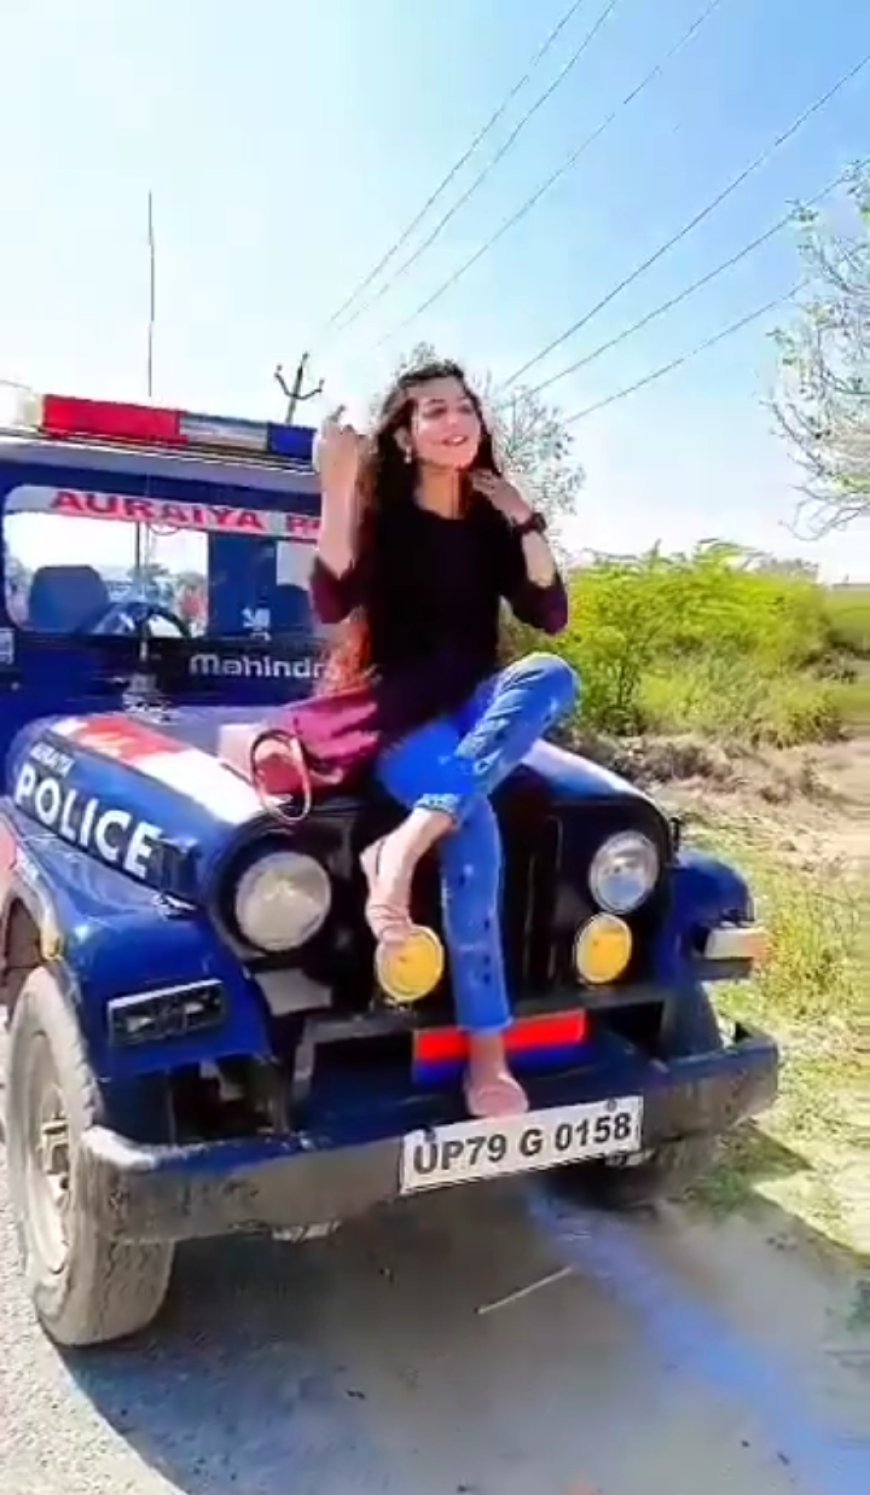 सरकारी वाहन का हो रहा है गलत उपयोग, सोशल मीडिया पर पुलिस की जीप के साथ हुआ एक लड़की का वीडियो सोशल मीडिया पर वायरल..........